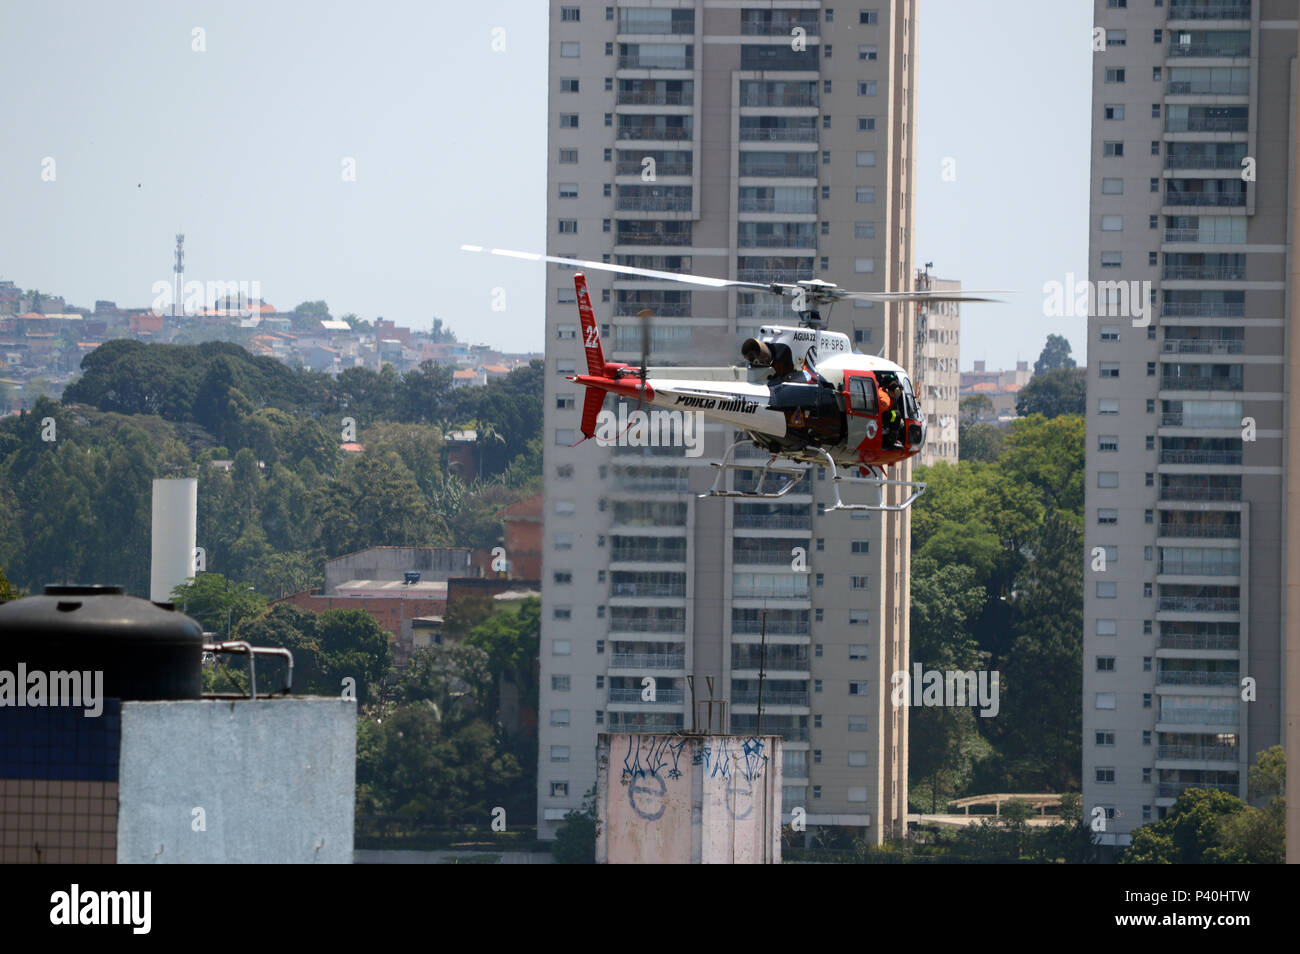 Segurança Pública. Policial a bordo fare helicóptero Águia da Polícia Militar PM de São Paulo sobrevoa bairro na zona Oeste. Foto Stock